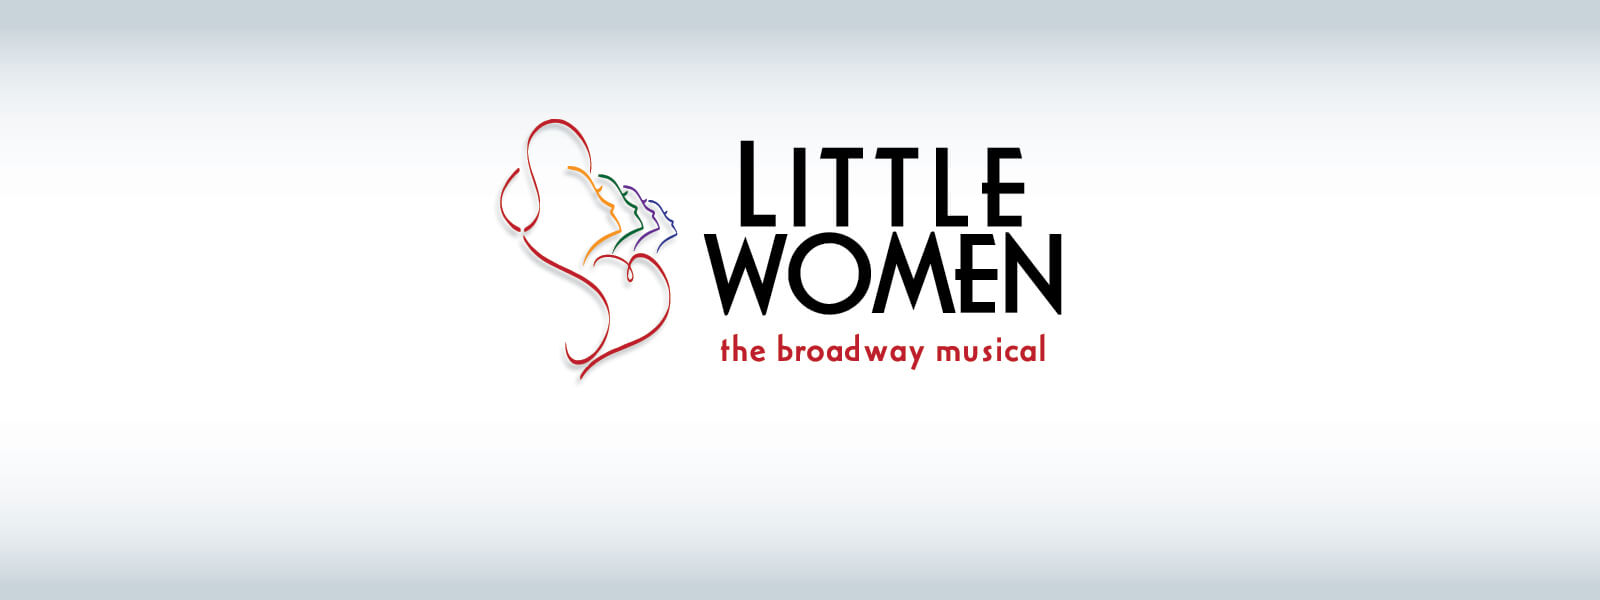 Little Women Musical Casting News